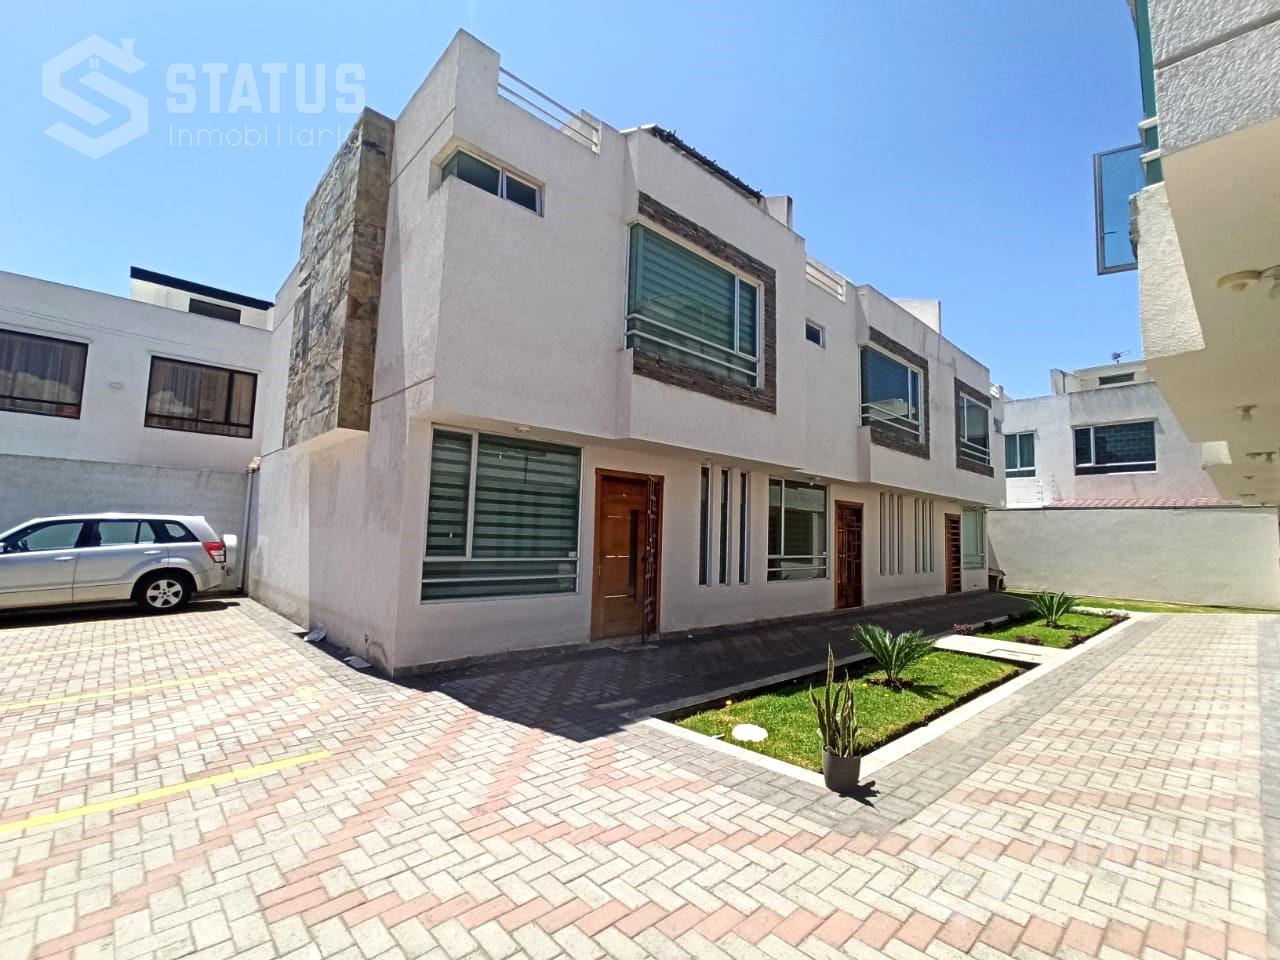 Vendo casa en Conjunto 3 Dorm., 1 Garaje, San Nicolás de las Abras - Riobamba, 160m, $79.900